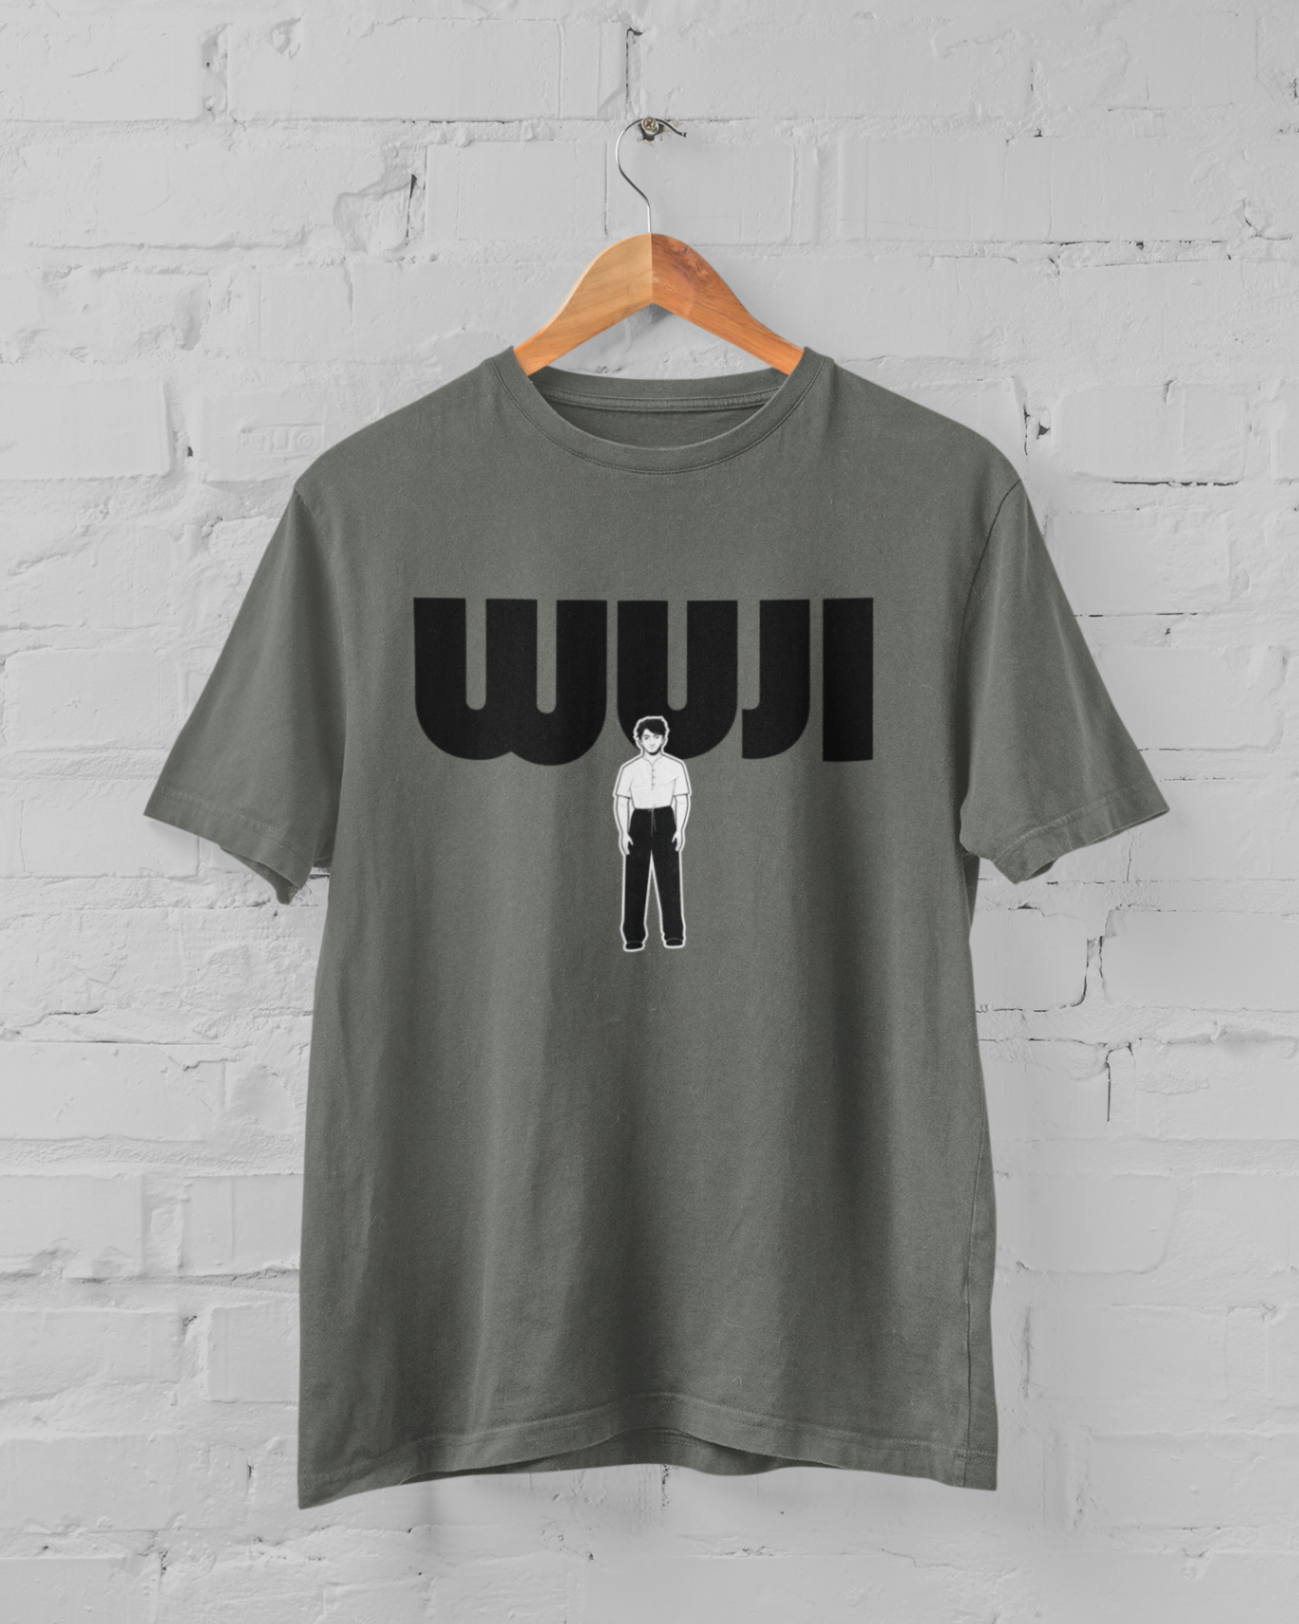 Women's "WUJI" T-shirt